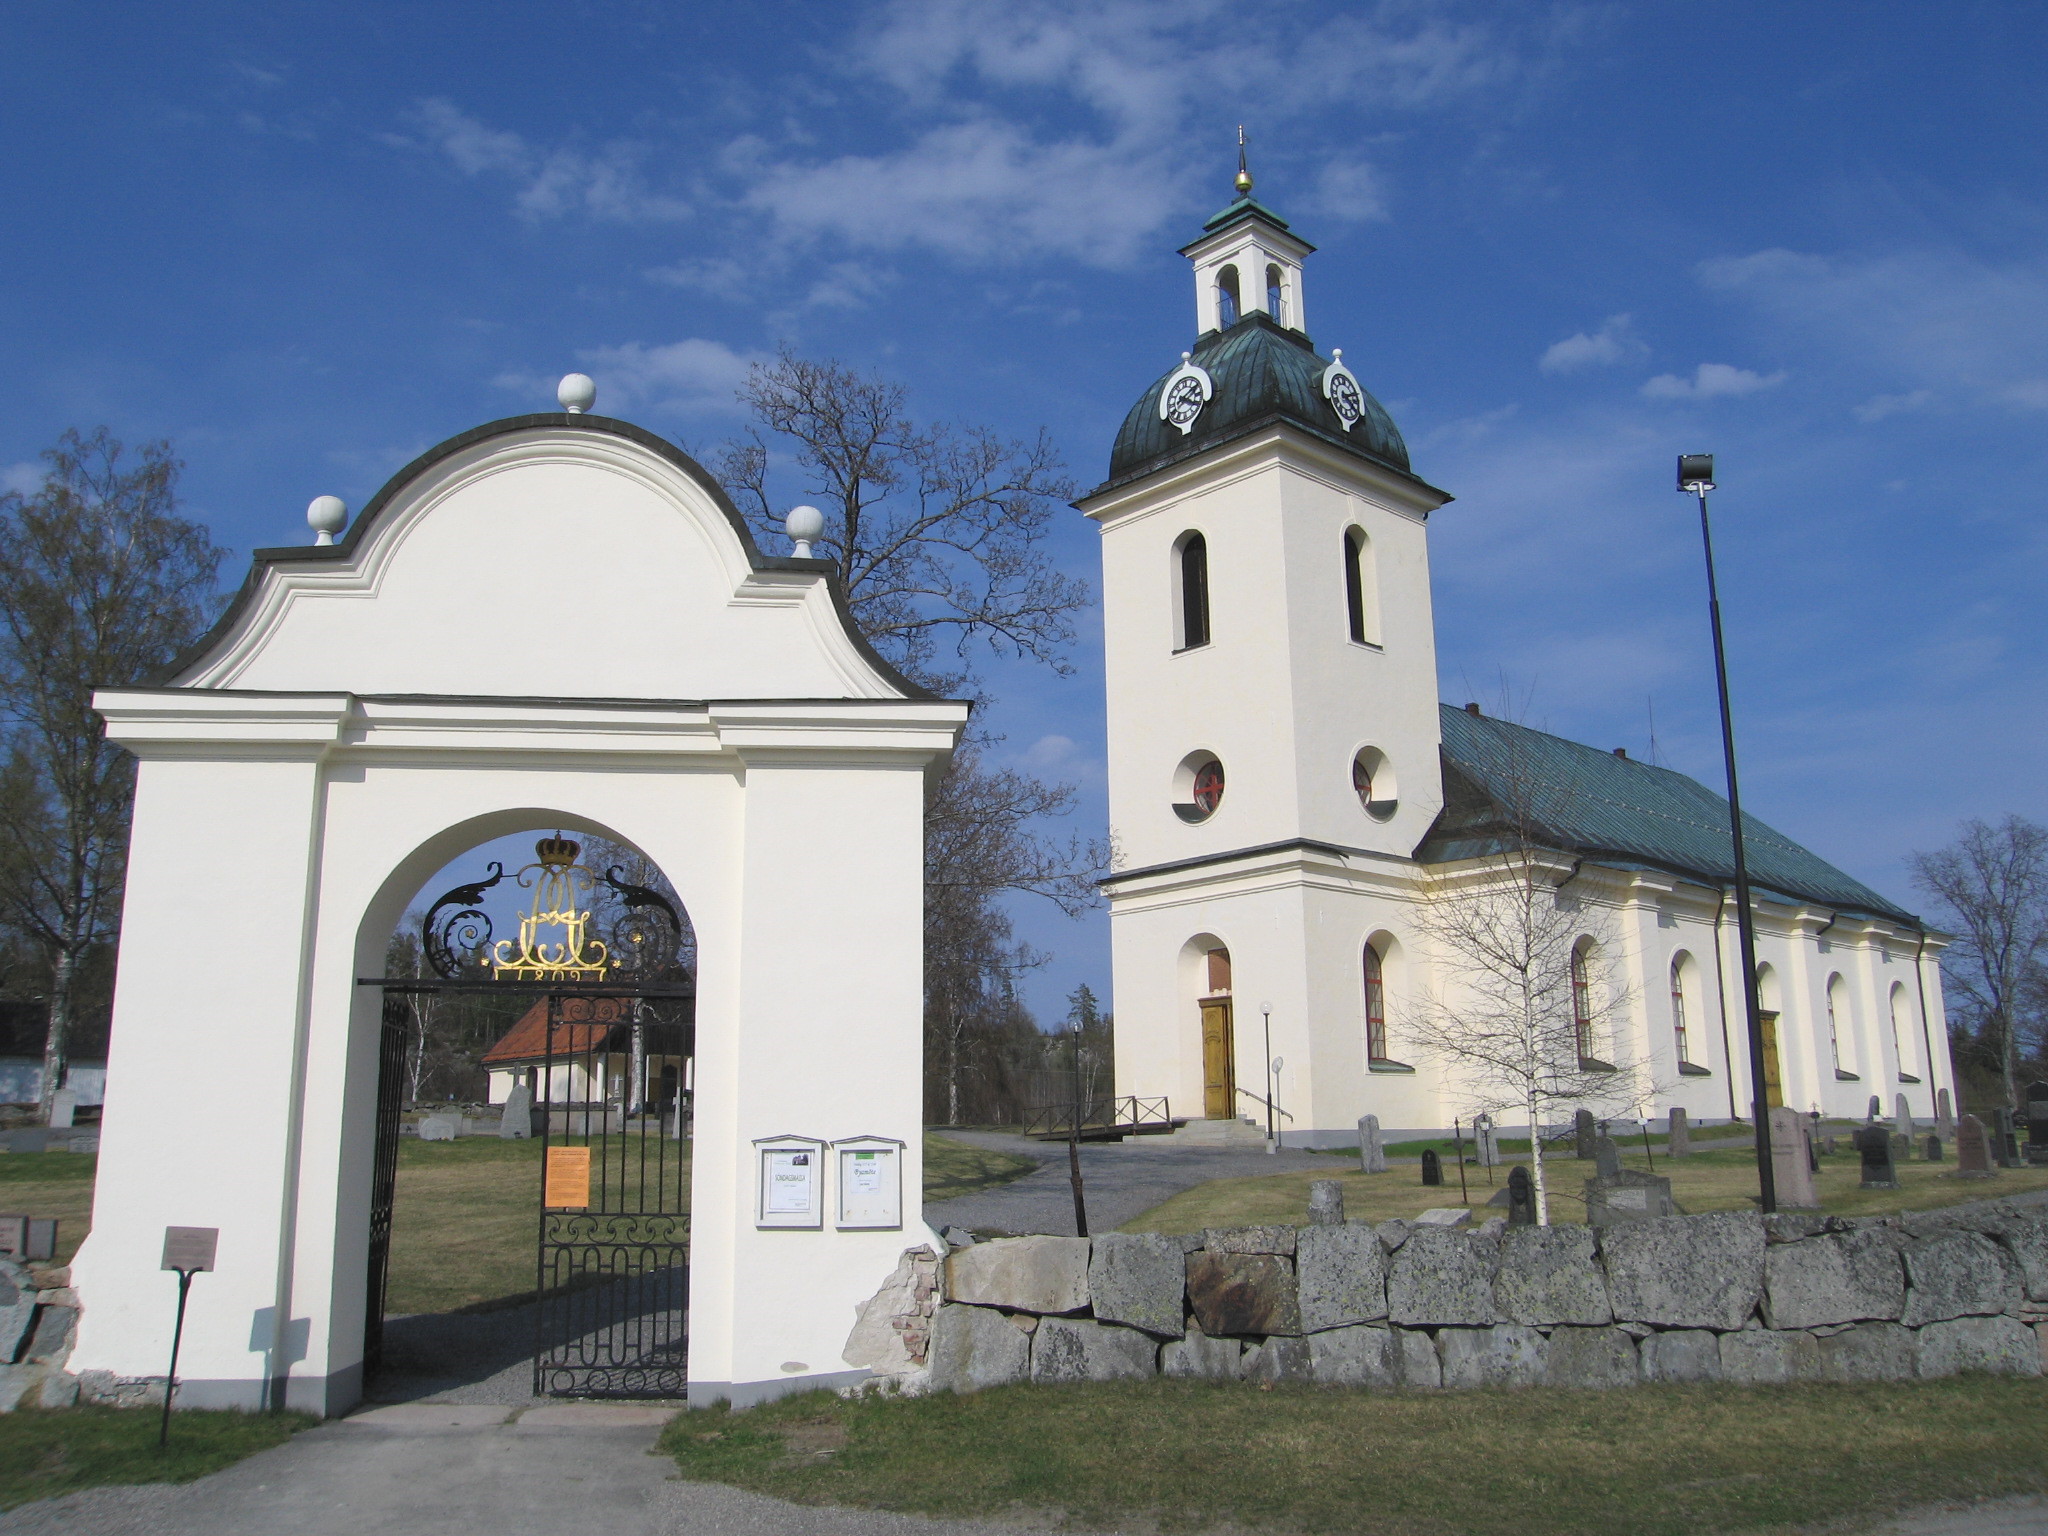 Högsjö kyrka med omgivande kyrkogård samt stigporten, vy från sydväst. 